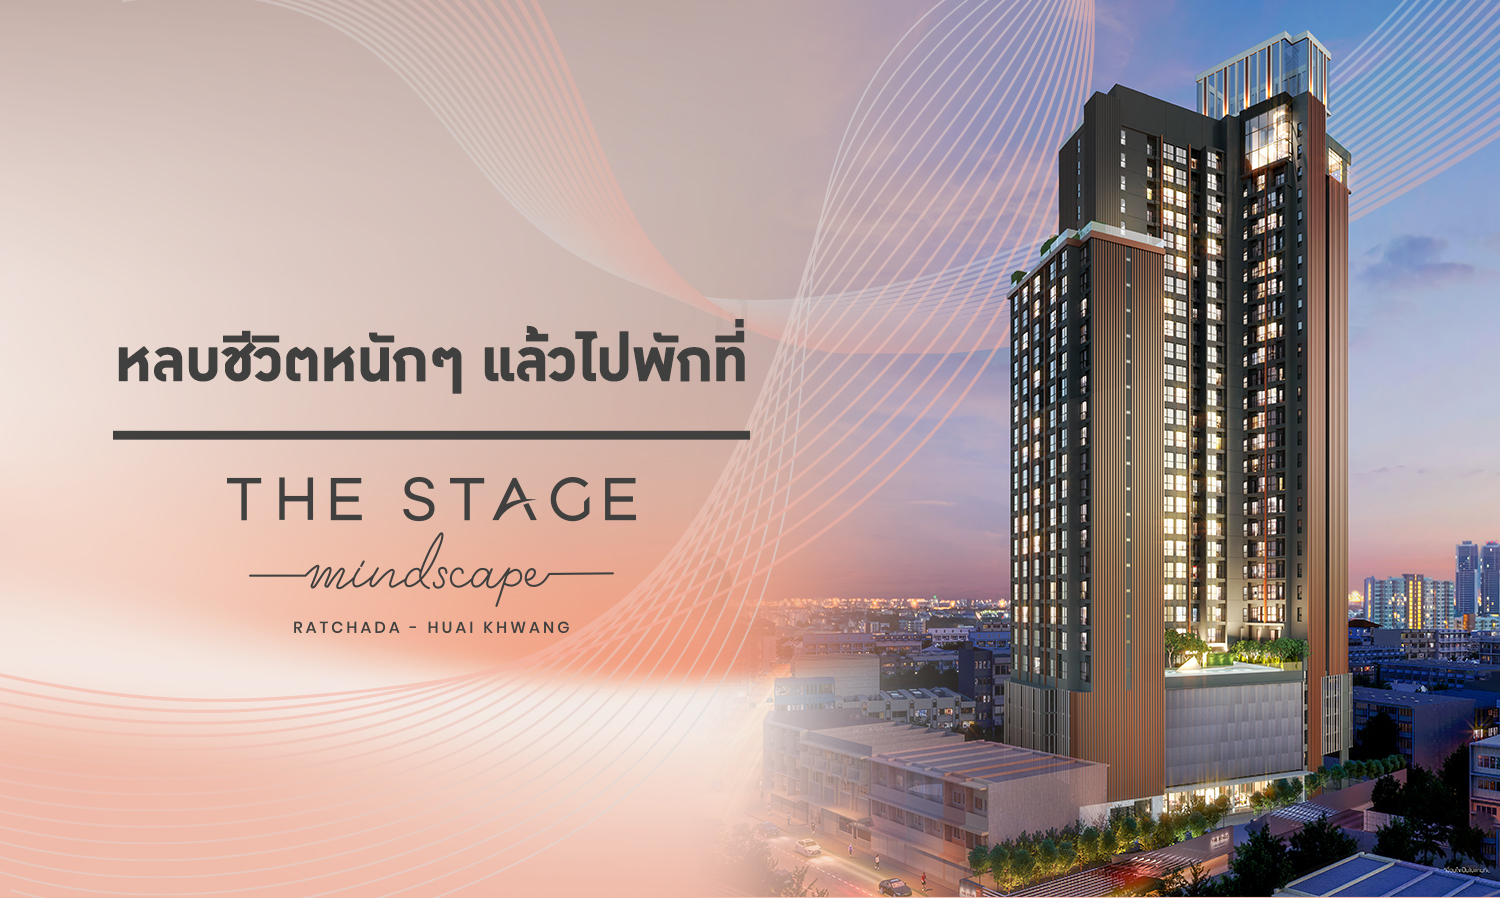 หลบชีวิตหนักๆ แล้วไปพักที่ THE STAGE Mindscape Ratchada-Huai Khwang  คอนโดใหม่ ราคาเริ่ม 2.59 ล้าน*  เปิดจองครั้งแรก Online Booking 18 กุมภาพันธ์นี้